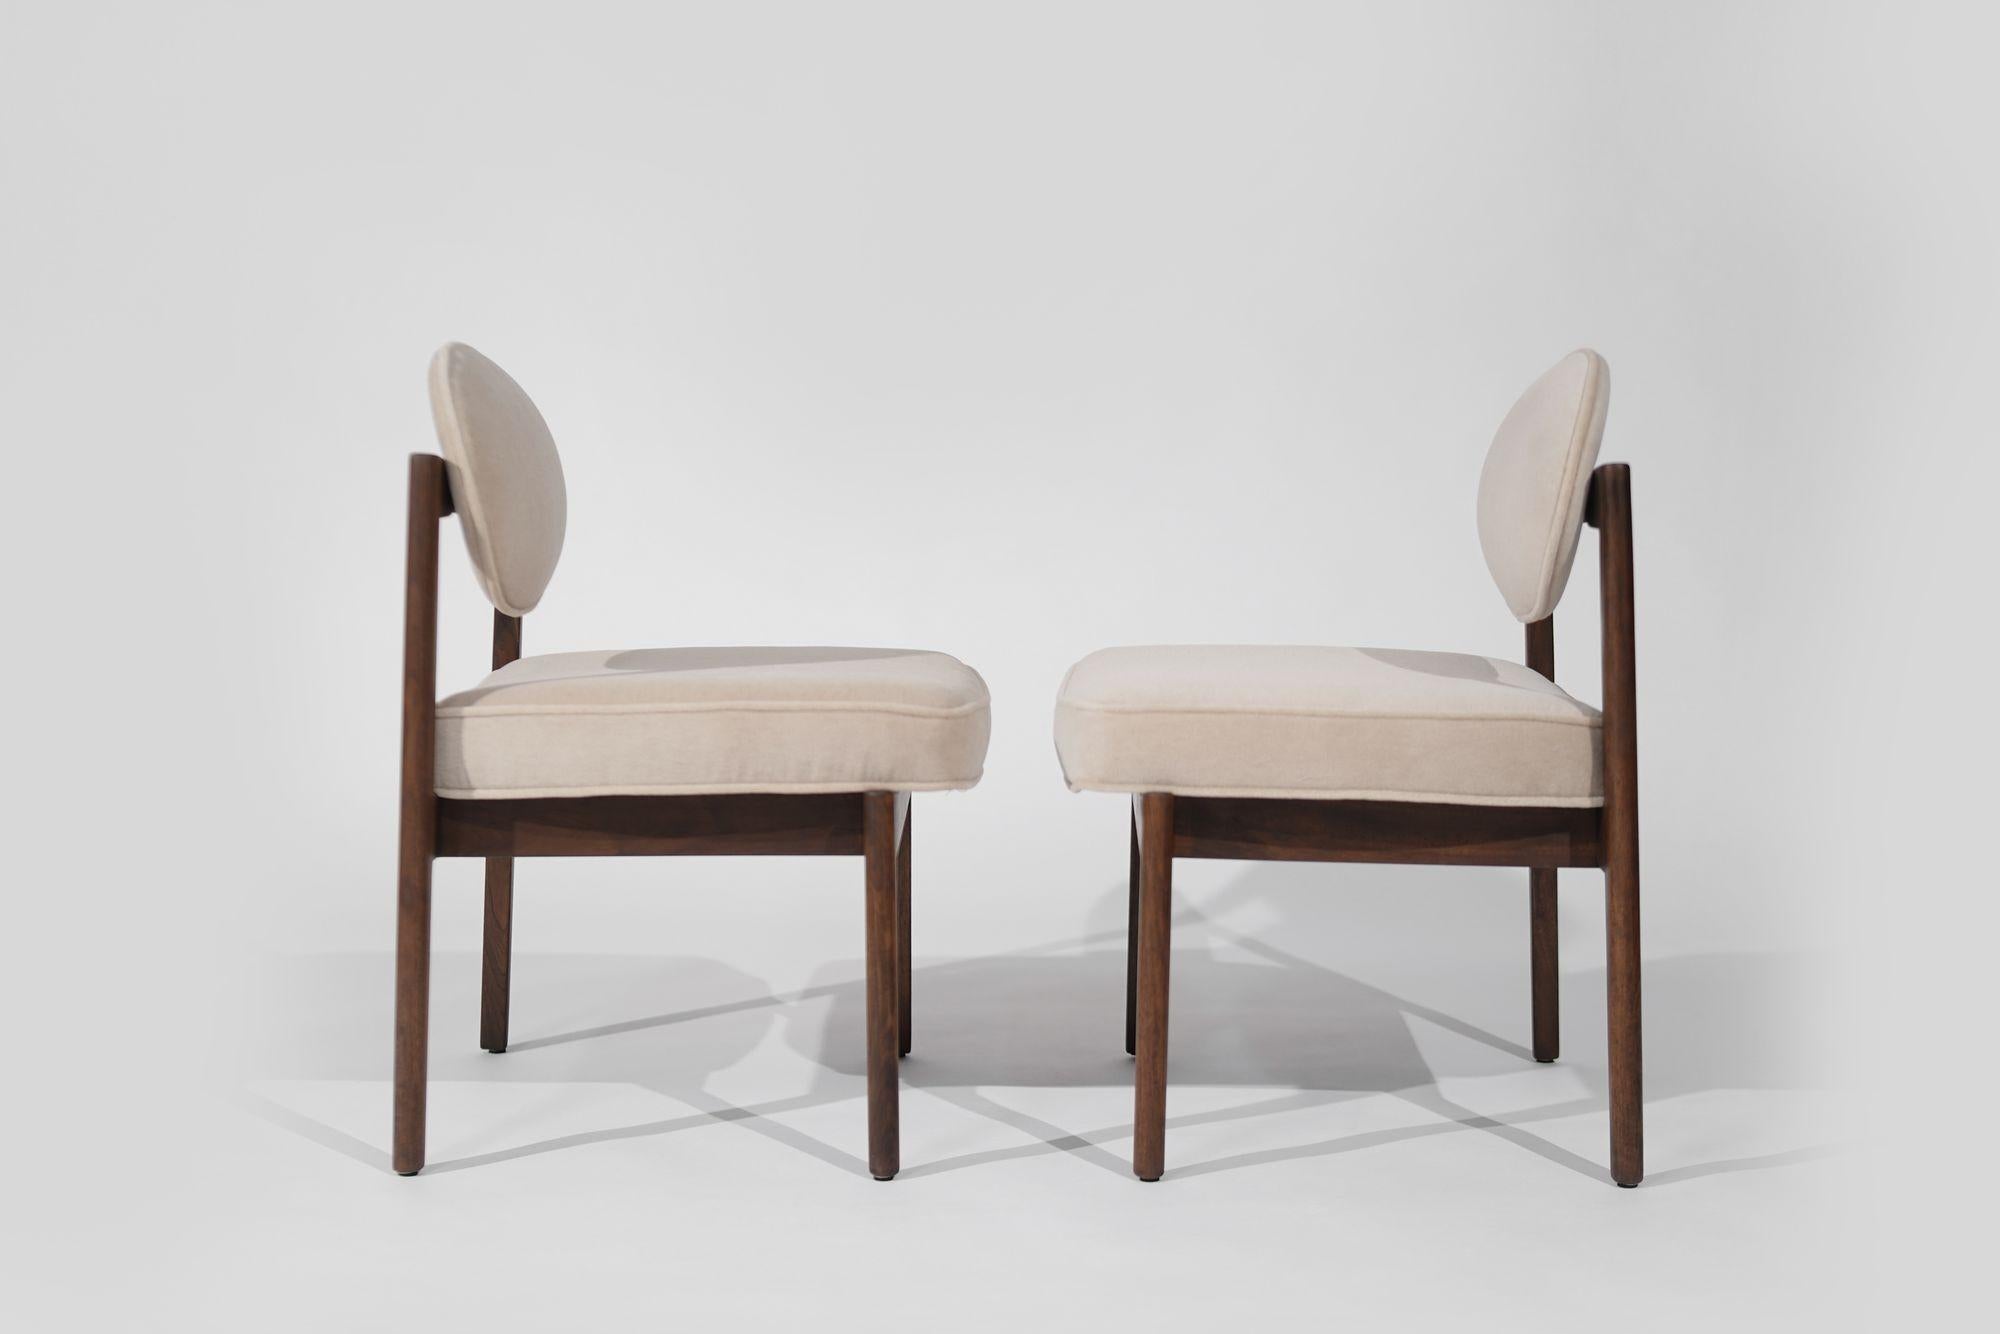 Ein exquisites Paar moderner Beistelltische aus der Mitte des Jahrhunderts, entworfen von Jens Risom, hergestellt um 1960-1969. Das sorgfältig restaurierte Nussbaumgestell erstrahlt in neuer Schönheit, ergänzt durch eine luxuriöse Neupolsterung aus